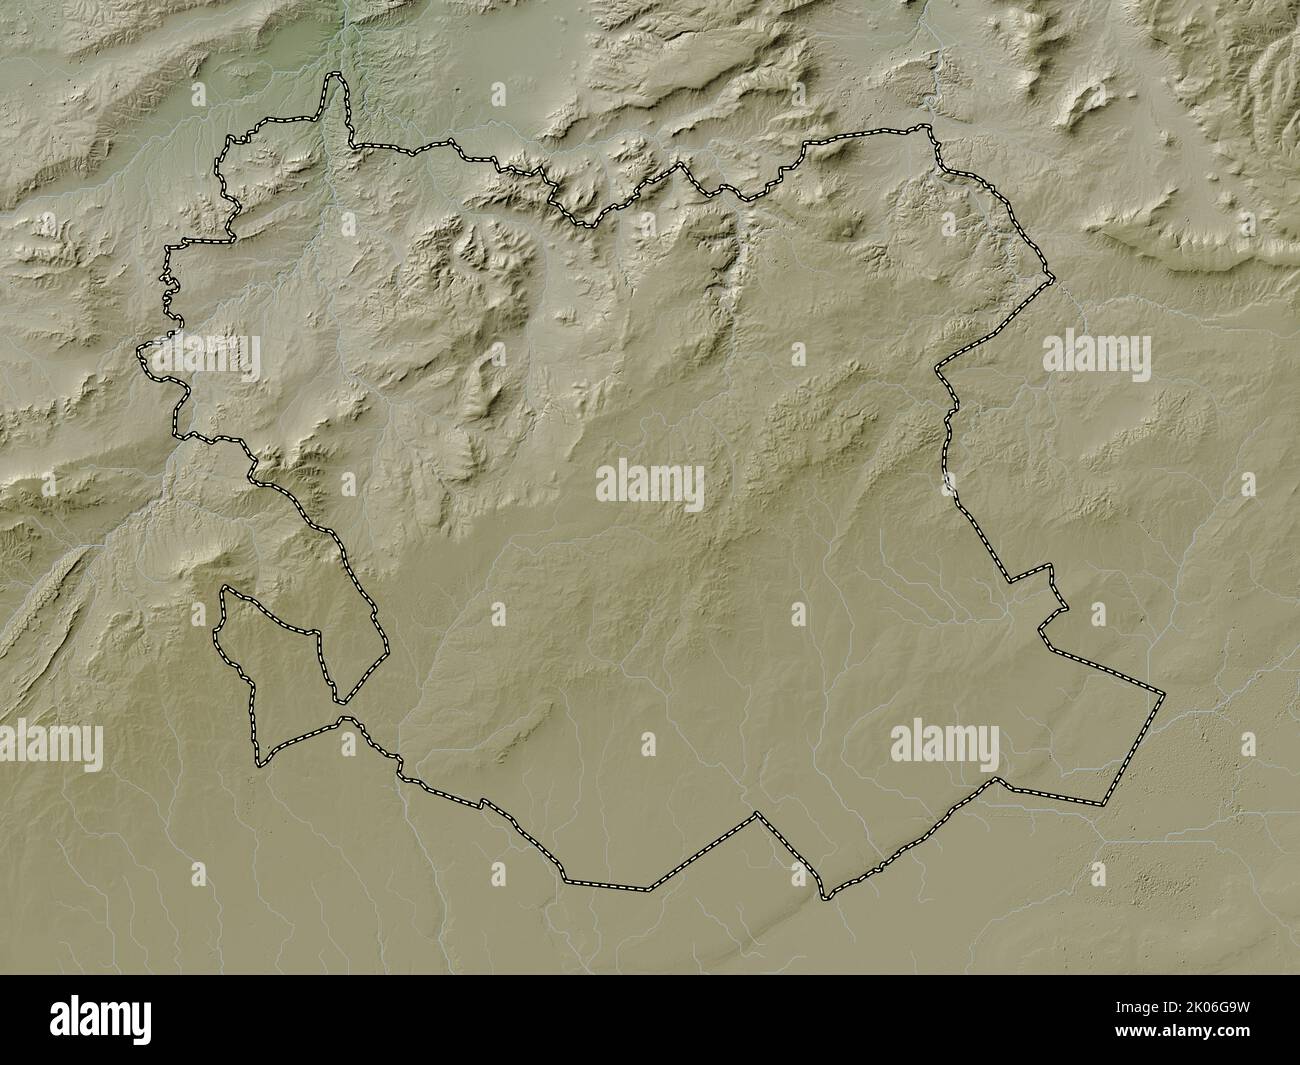 Saida, province d'Algérie. Carte d'altitude colorée en style wiki avec lacs et rivières Banque D'Images